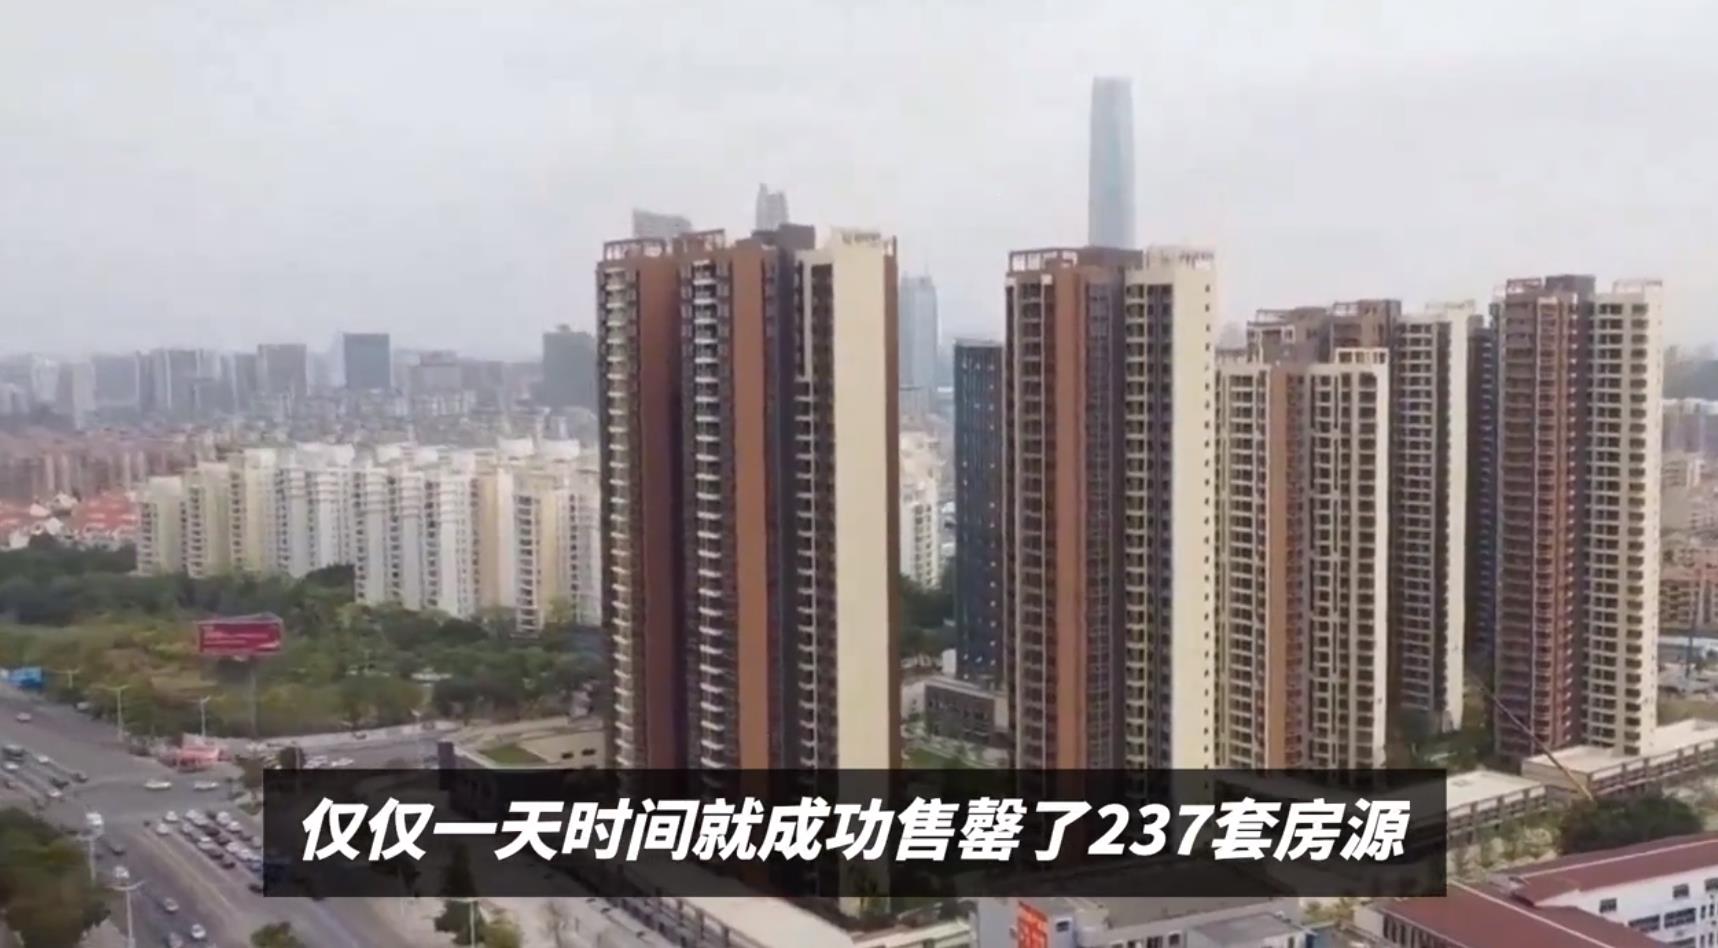 深圳千万豪宅楼盘再次“日光” 豪宅热销只是个案不能代表整个市场